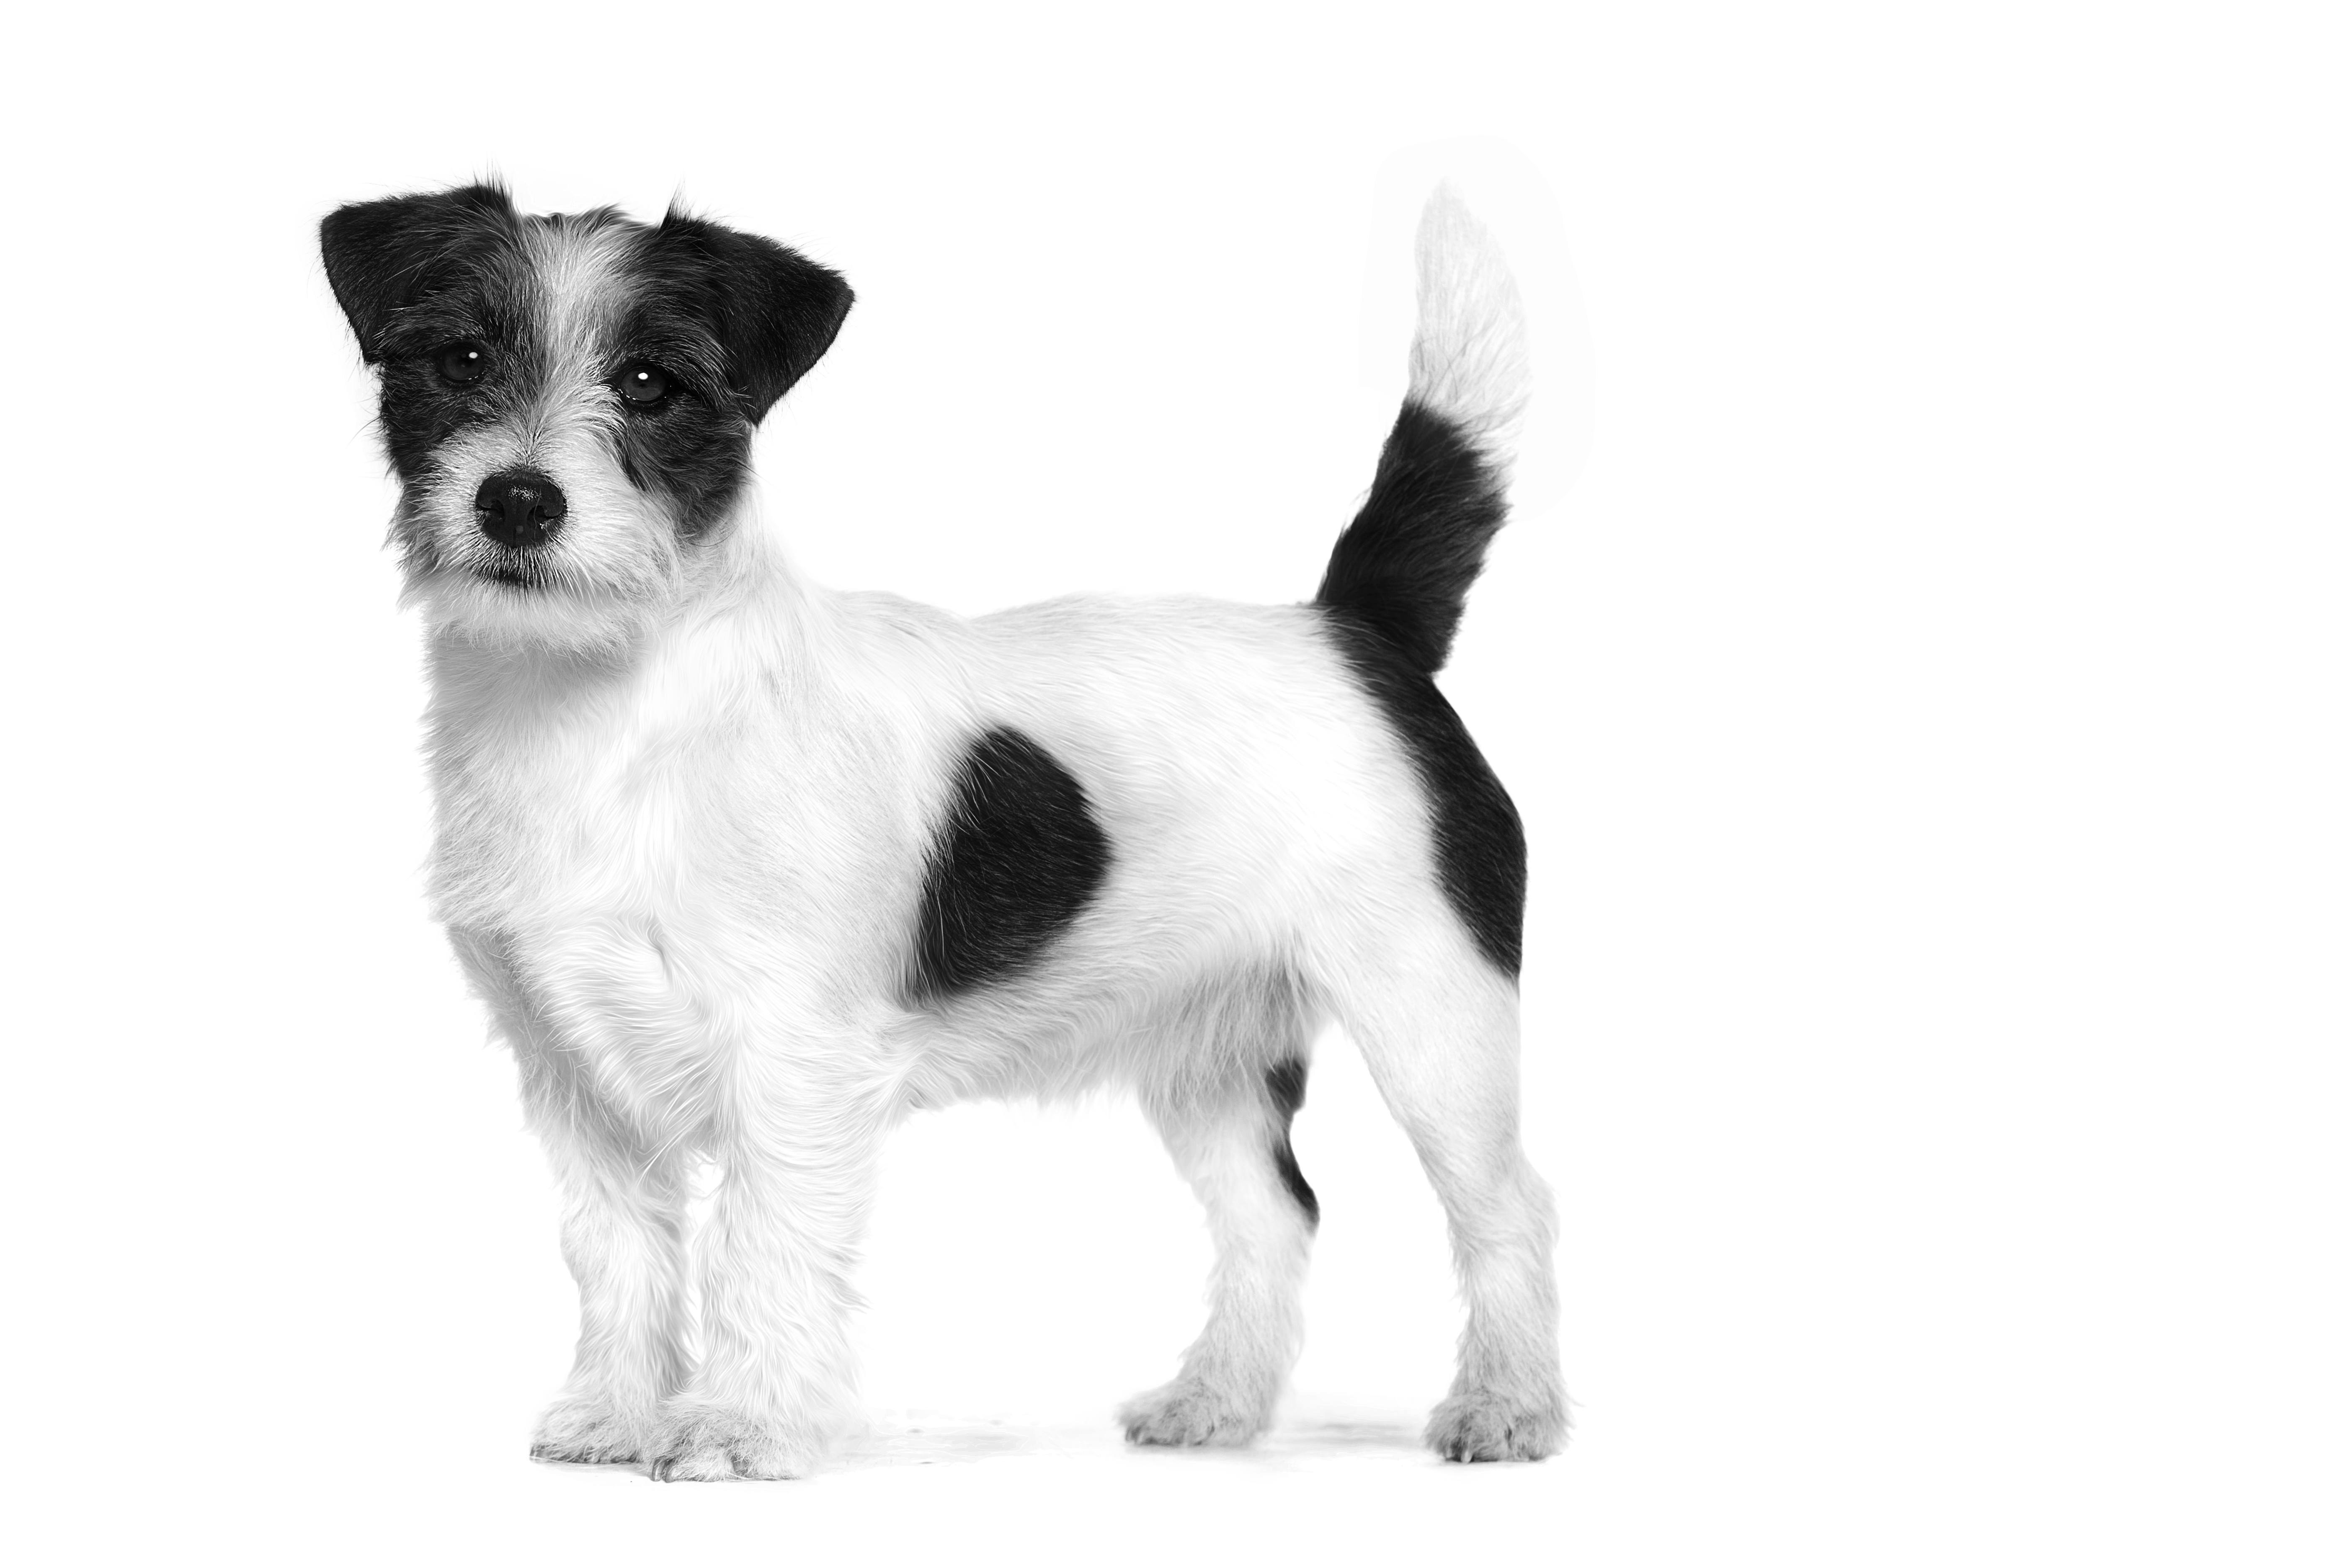 Jack Russell Terrier adulto de pie en blanco y negro sobre un fondo blanco.